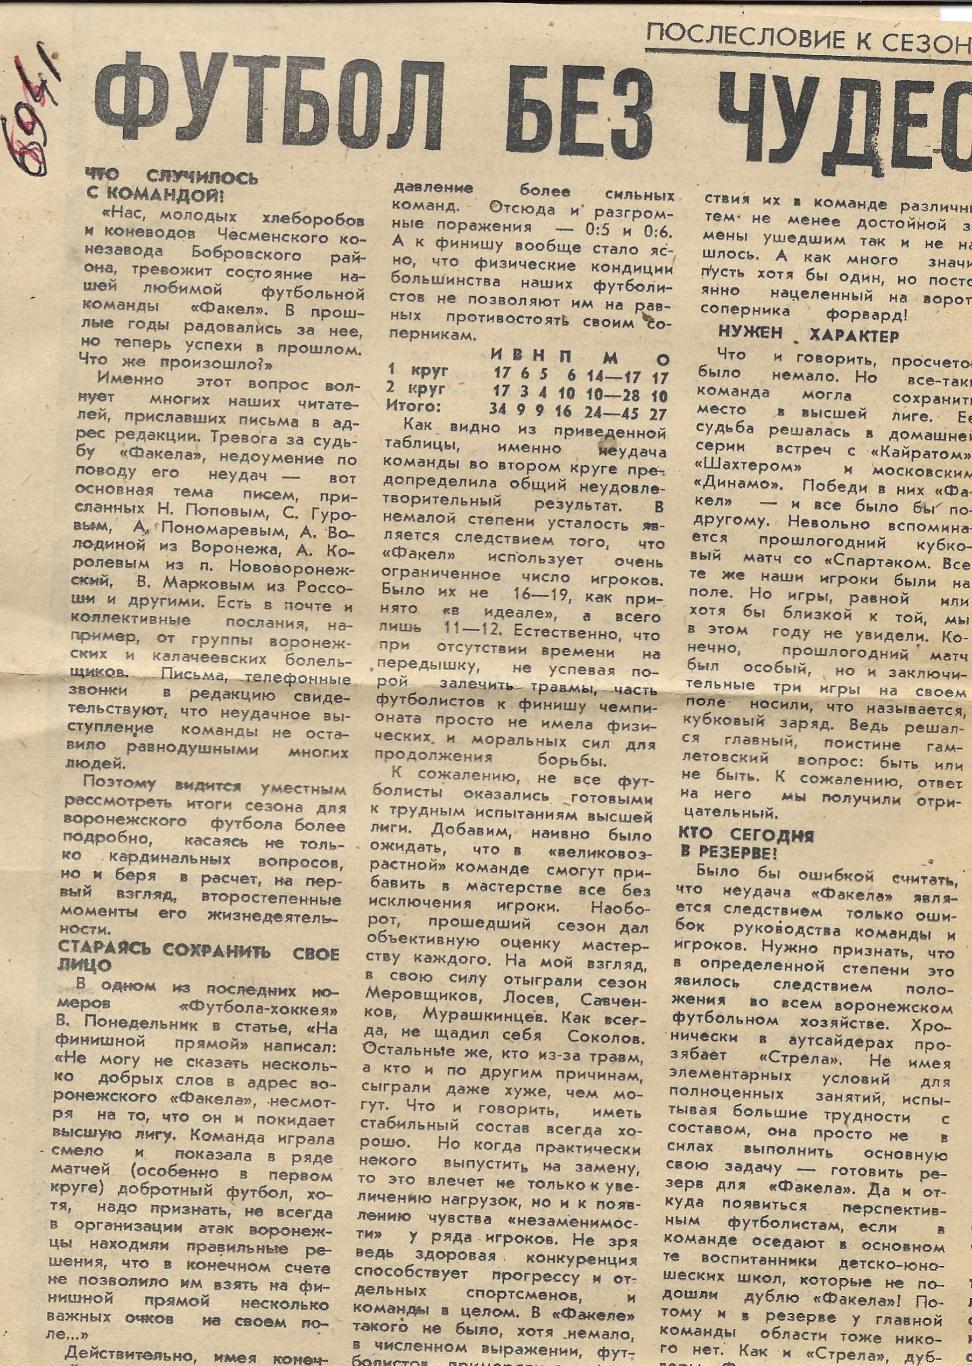 Обзор матчей_первой лиги._1985_(6941)